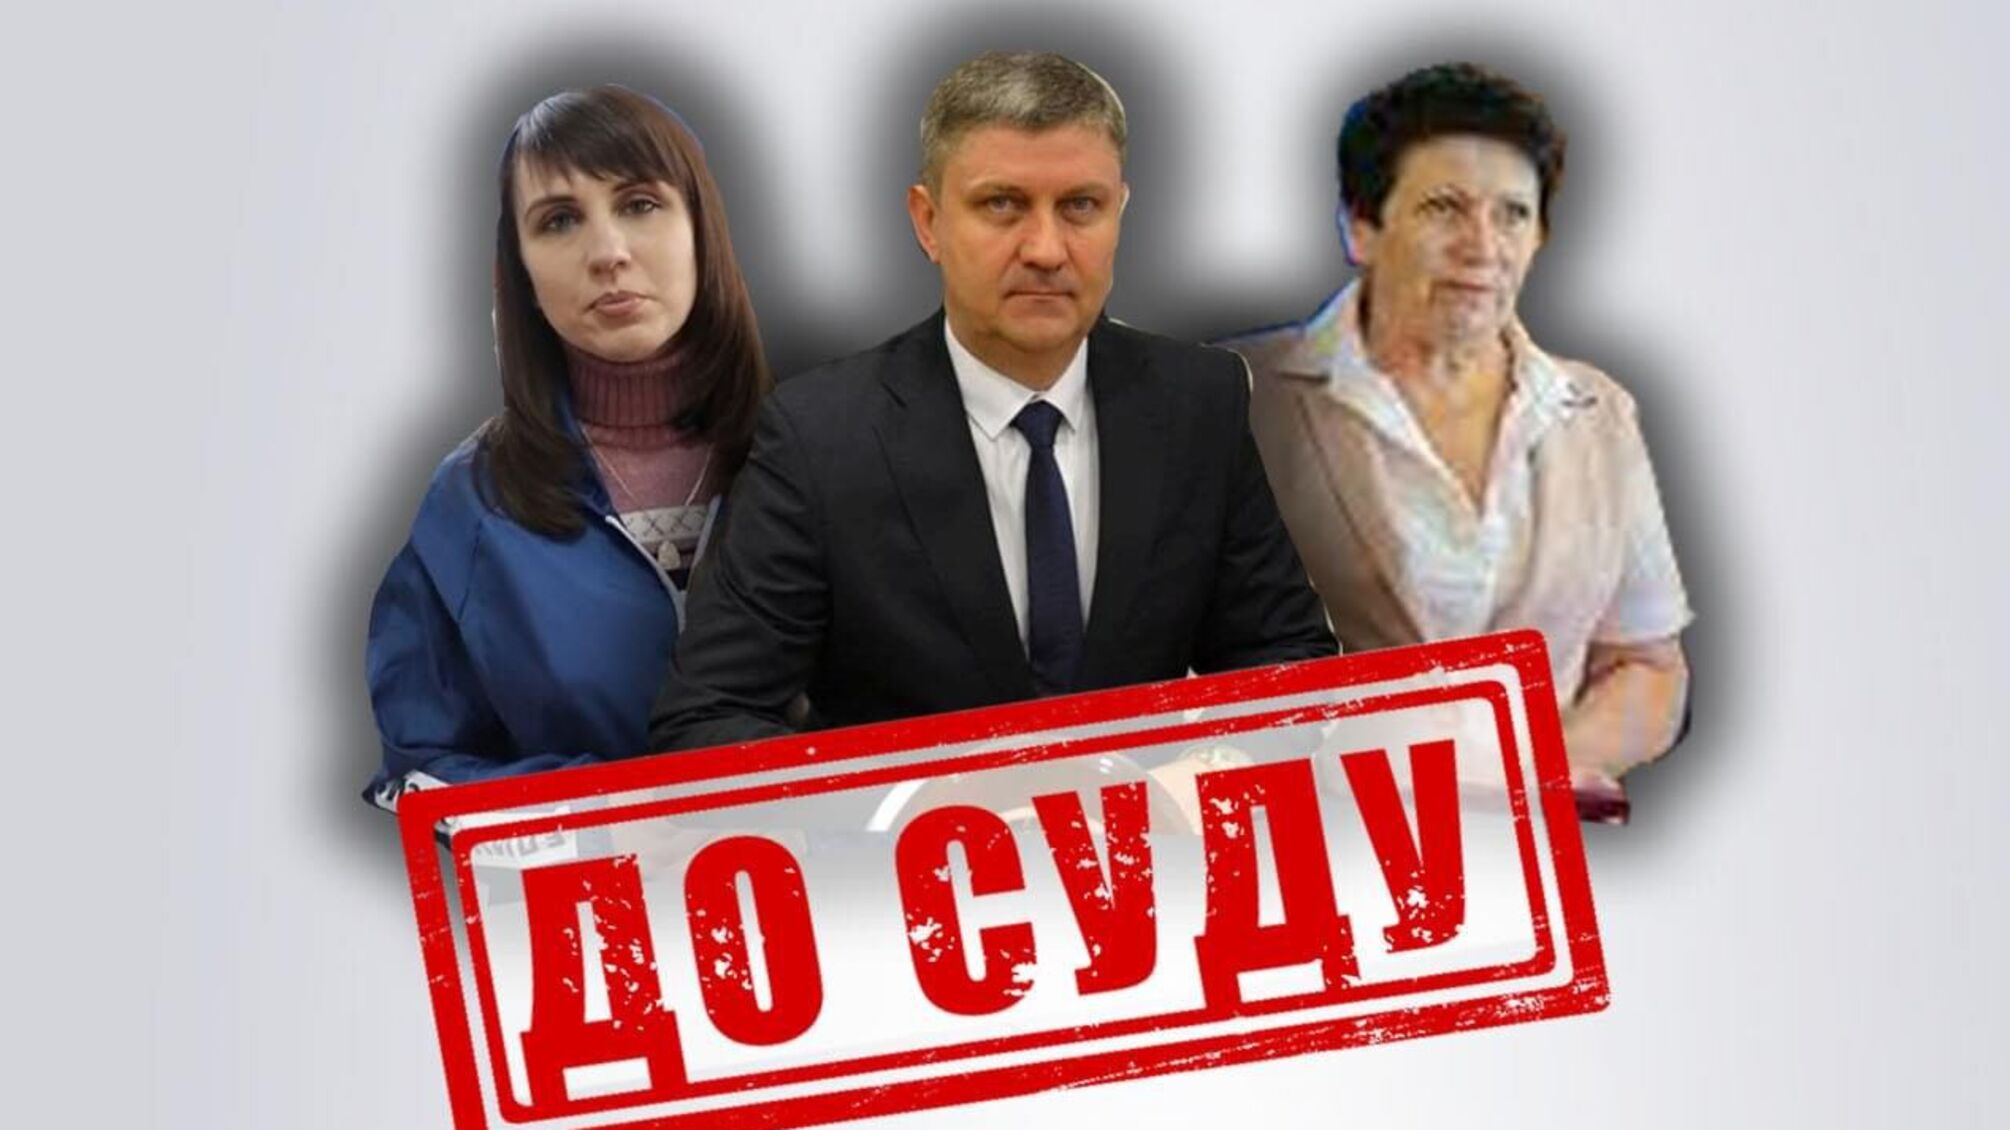 Перешли на сторону врага: до 10 лет тюрьмы грозит руководителям вражеских 'органов власти' в Луганской области